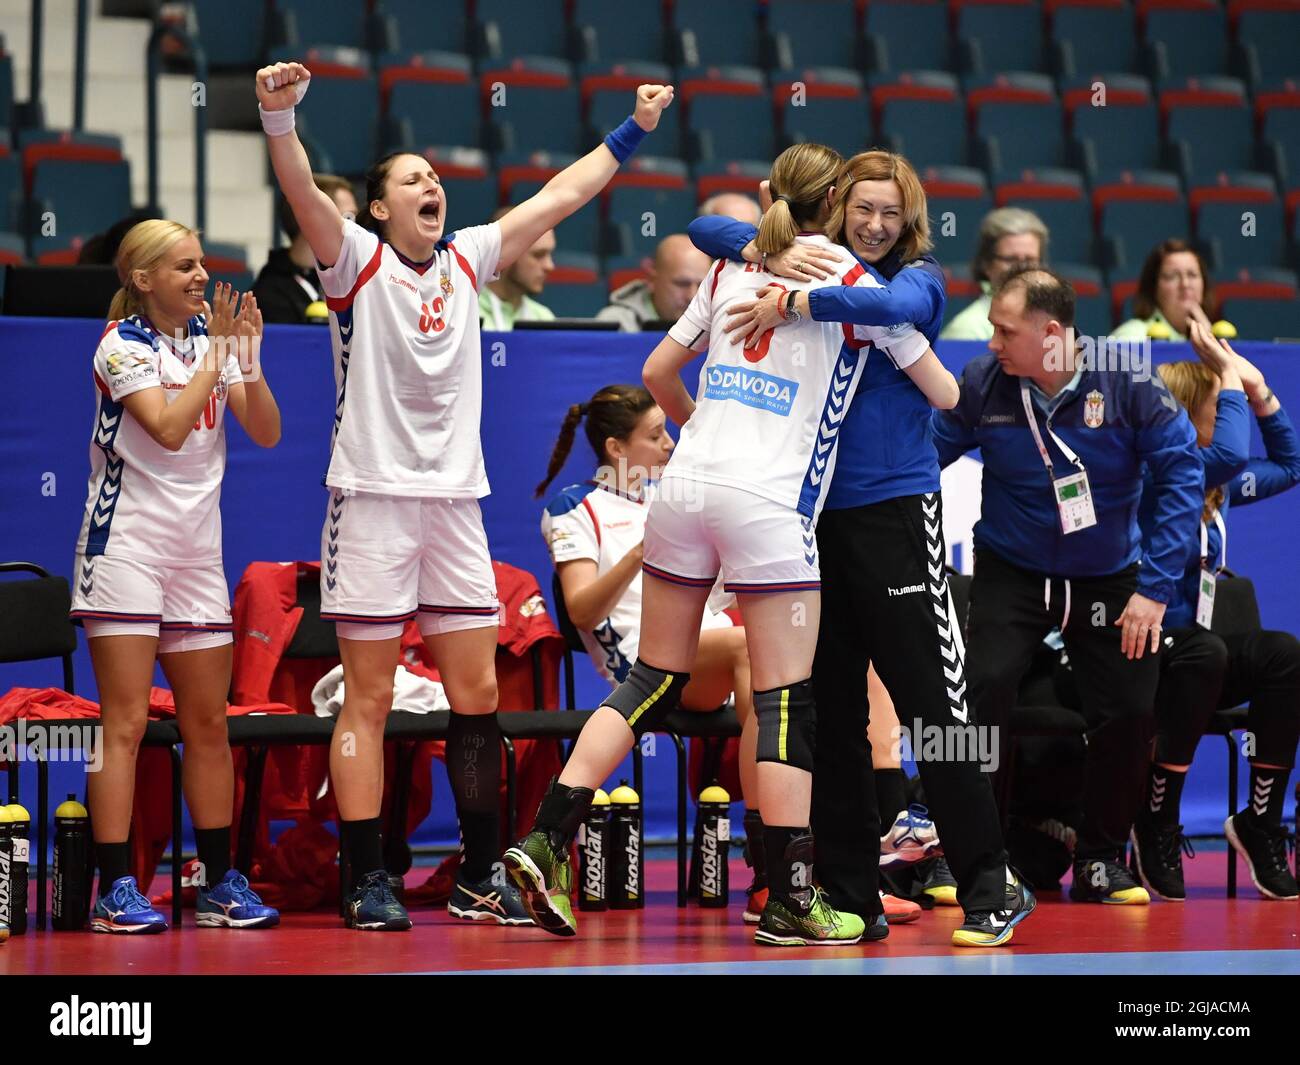 Zeljka Nikolic aus Serbien feiert mit ihren Armen in der Luft den Sieg 23-25 während des Europameisterschaftsverlaufes der Handball-Europameisterschaft Spanien-Serbien in der Hovet Arena in Stockholm, Schweden, am 06. Dezember 2016. Foto: Anders Wiklund / TT / Code 10040 Stockfoto